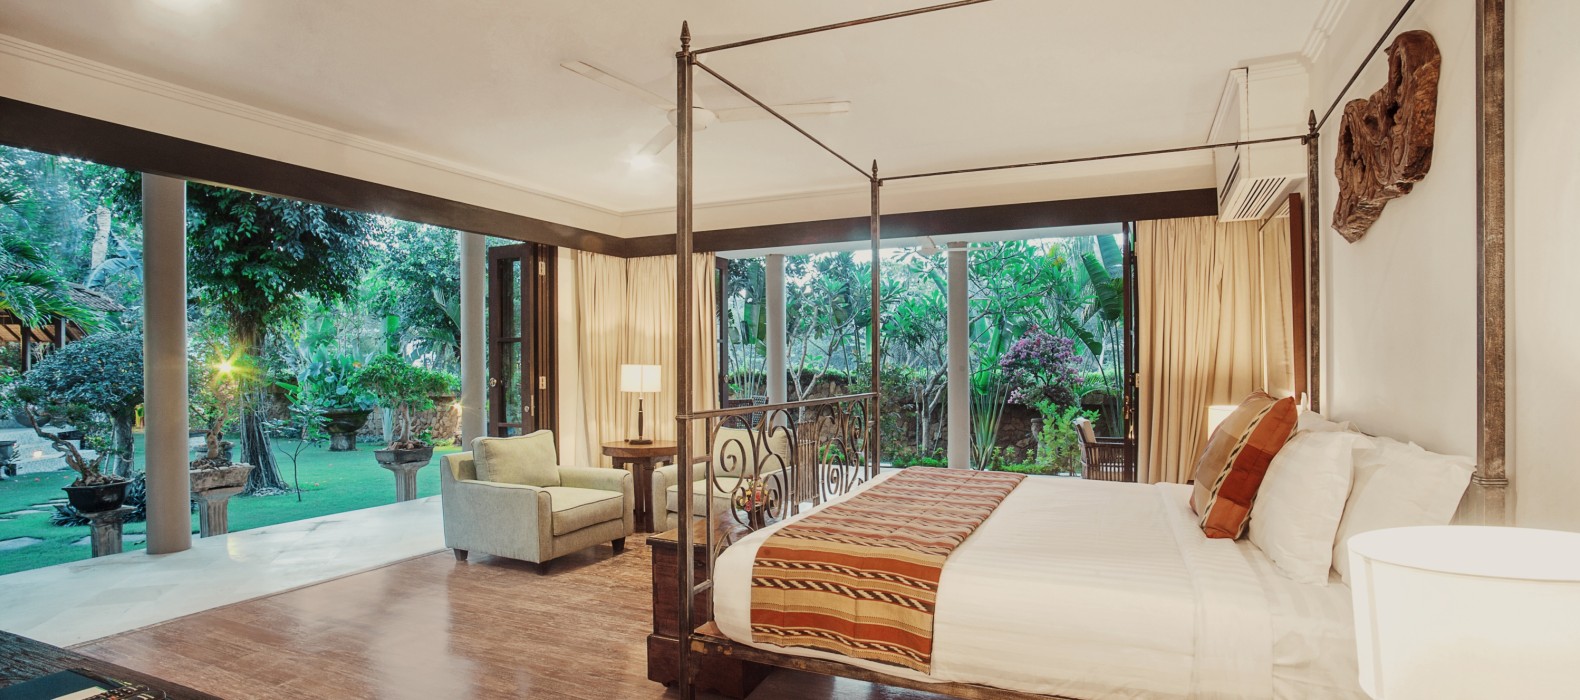 Bedroom view of Villa Amaia in Bali